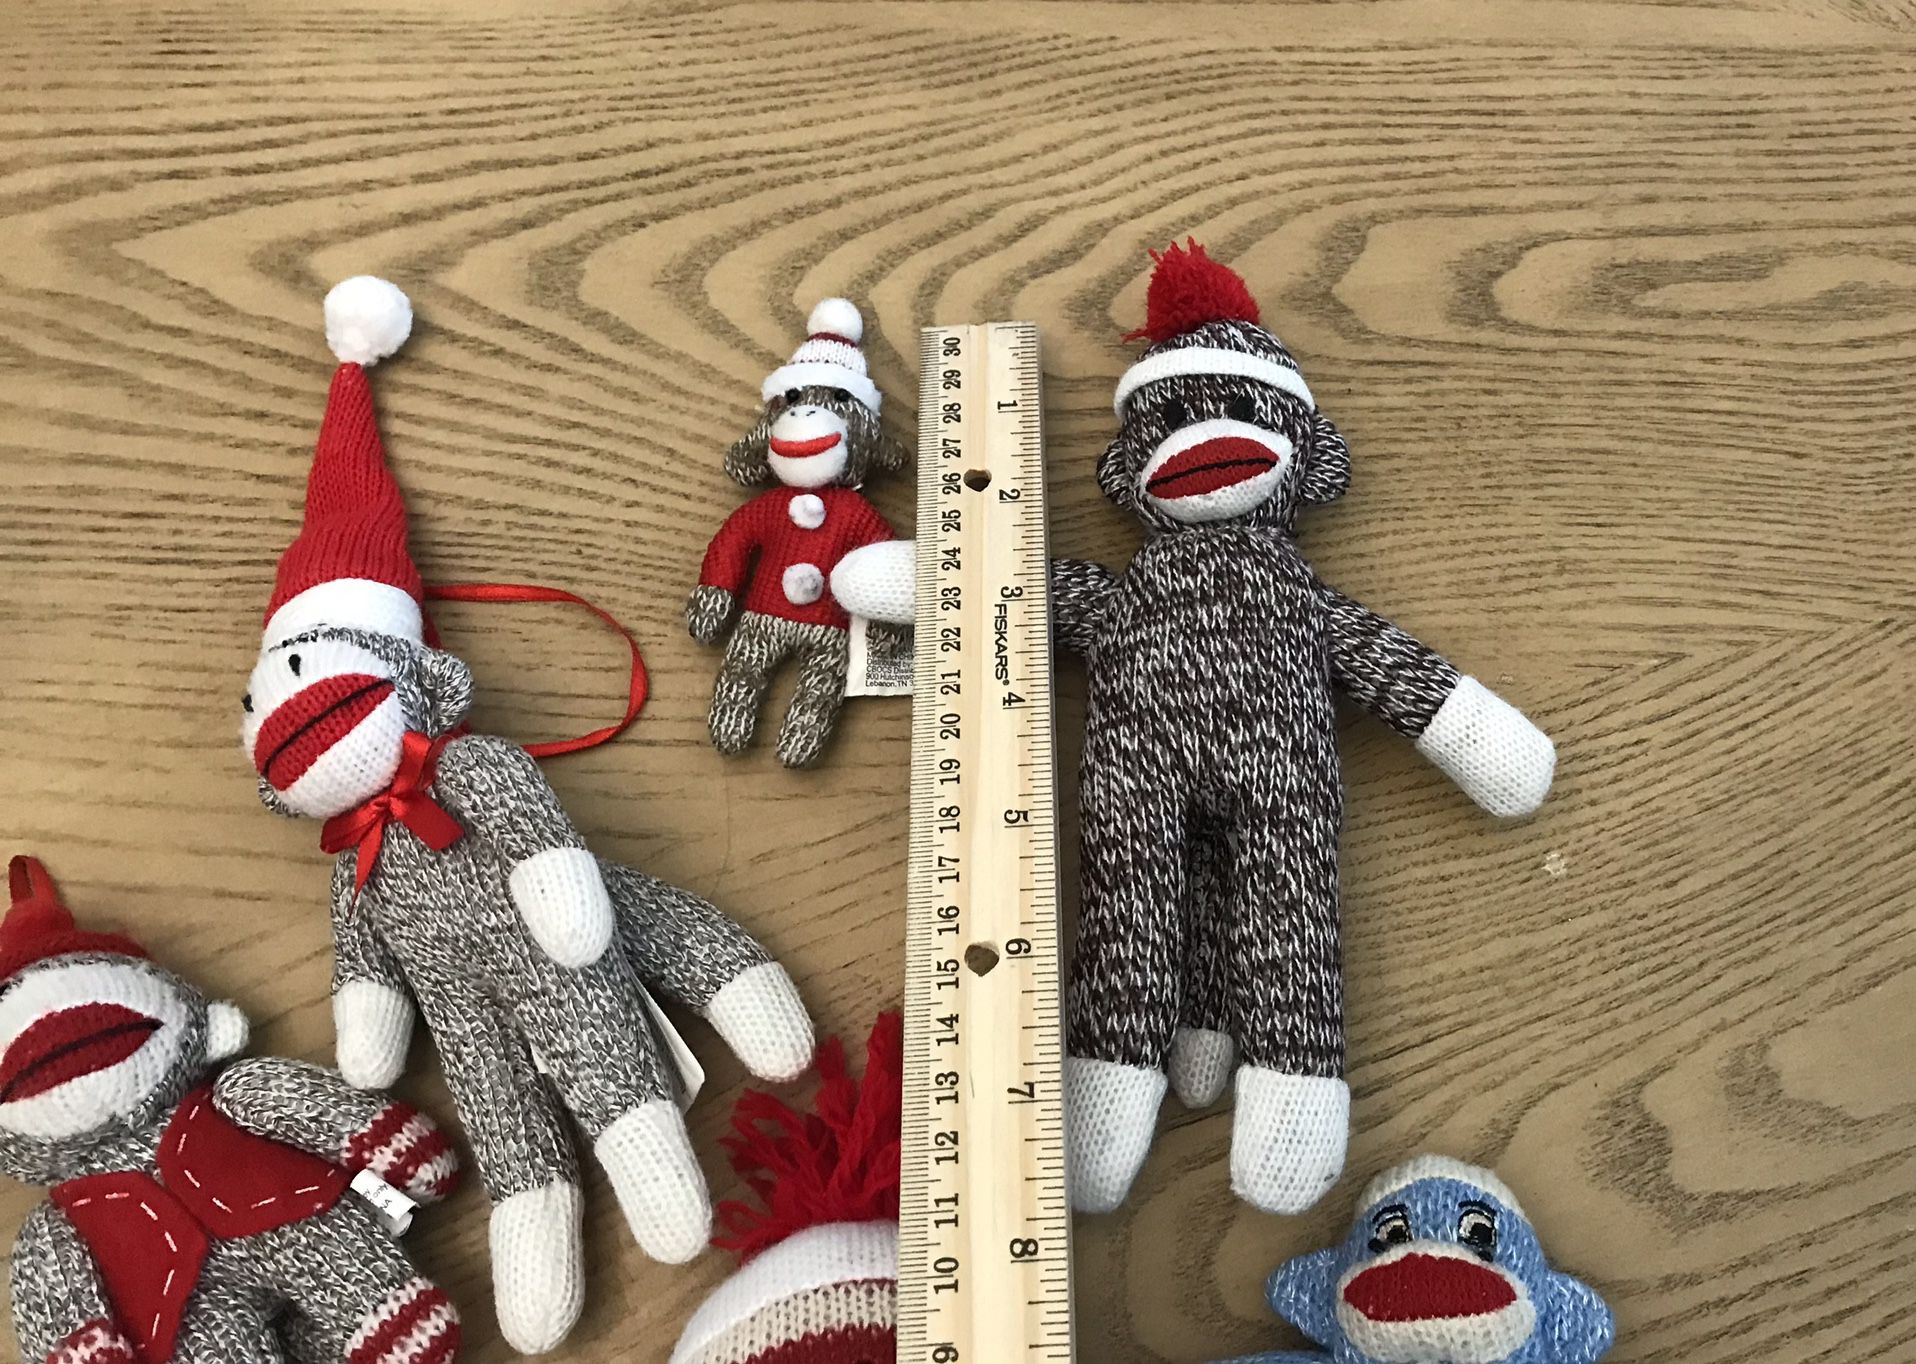 Sock Monkey Mini Plush Stuffed Toys